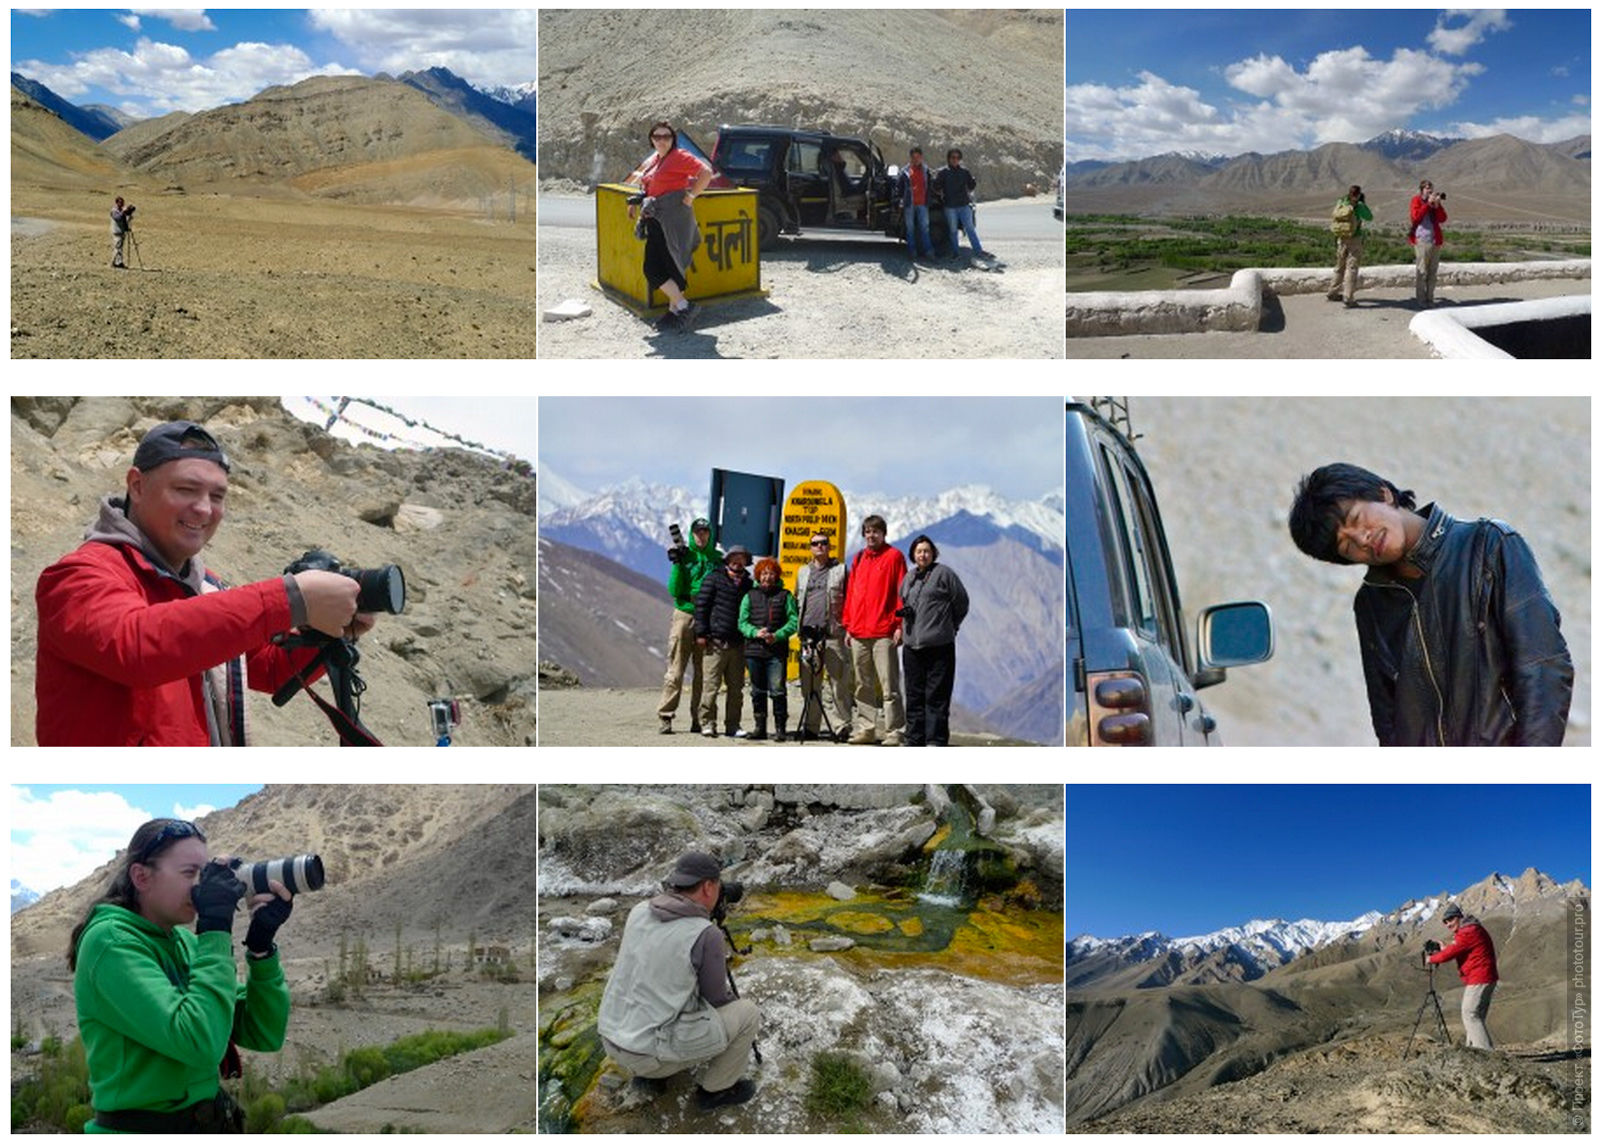 Рекламный фототур по долинам Малого Тибета: Ладакх, Ламаюру и Нубра, май 2014 года.